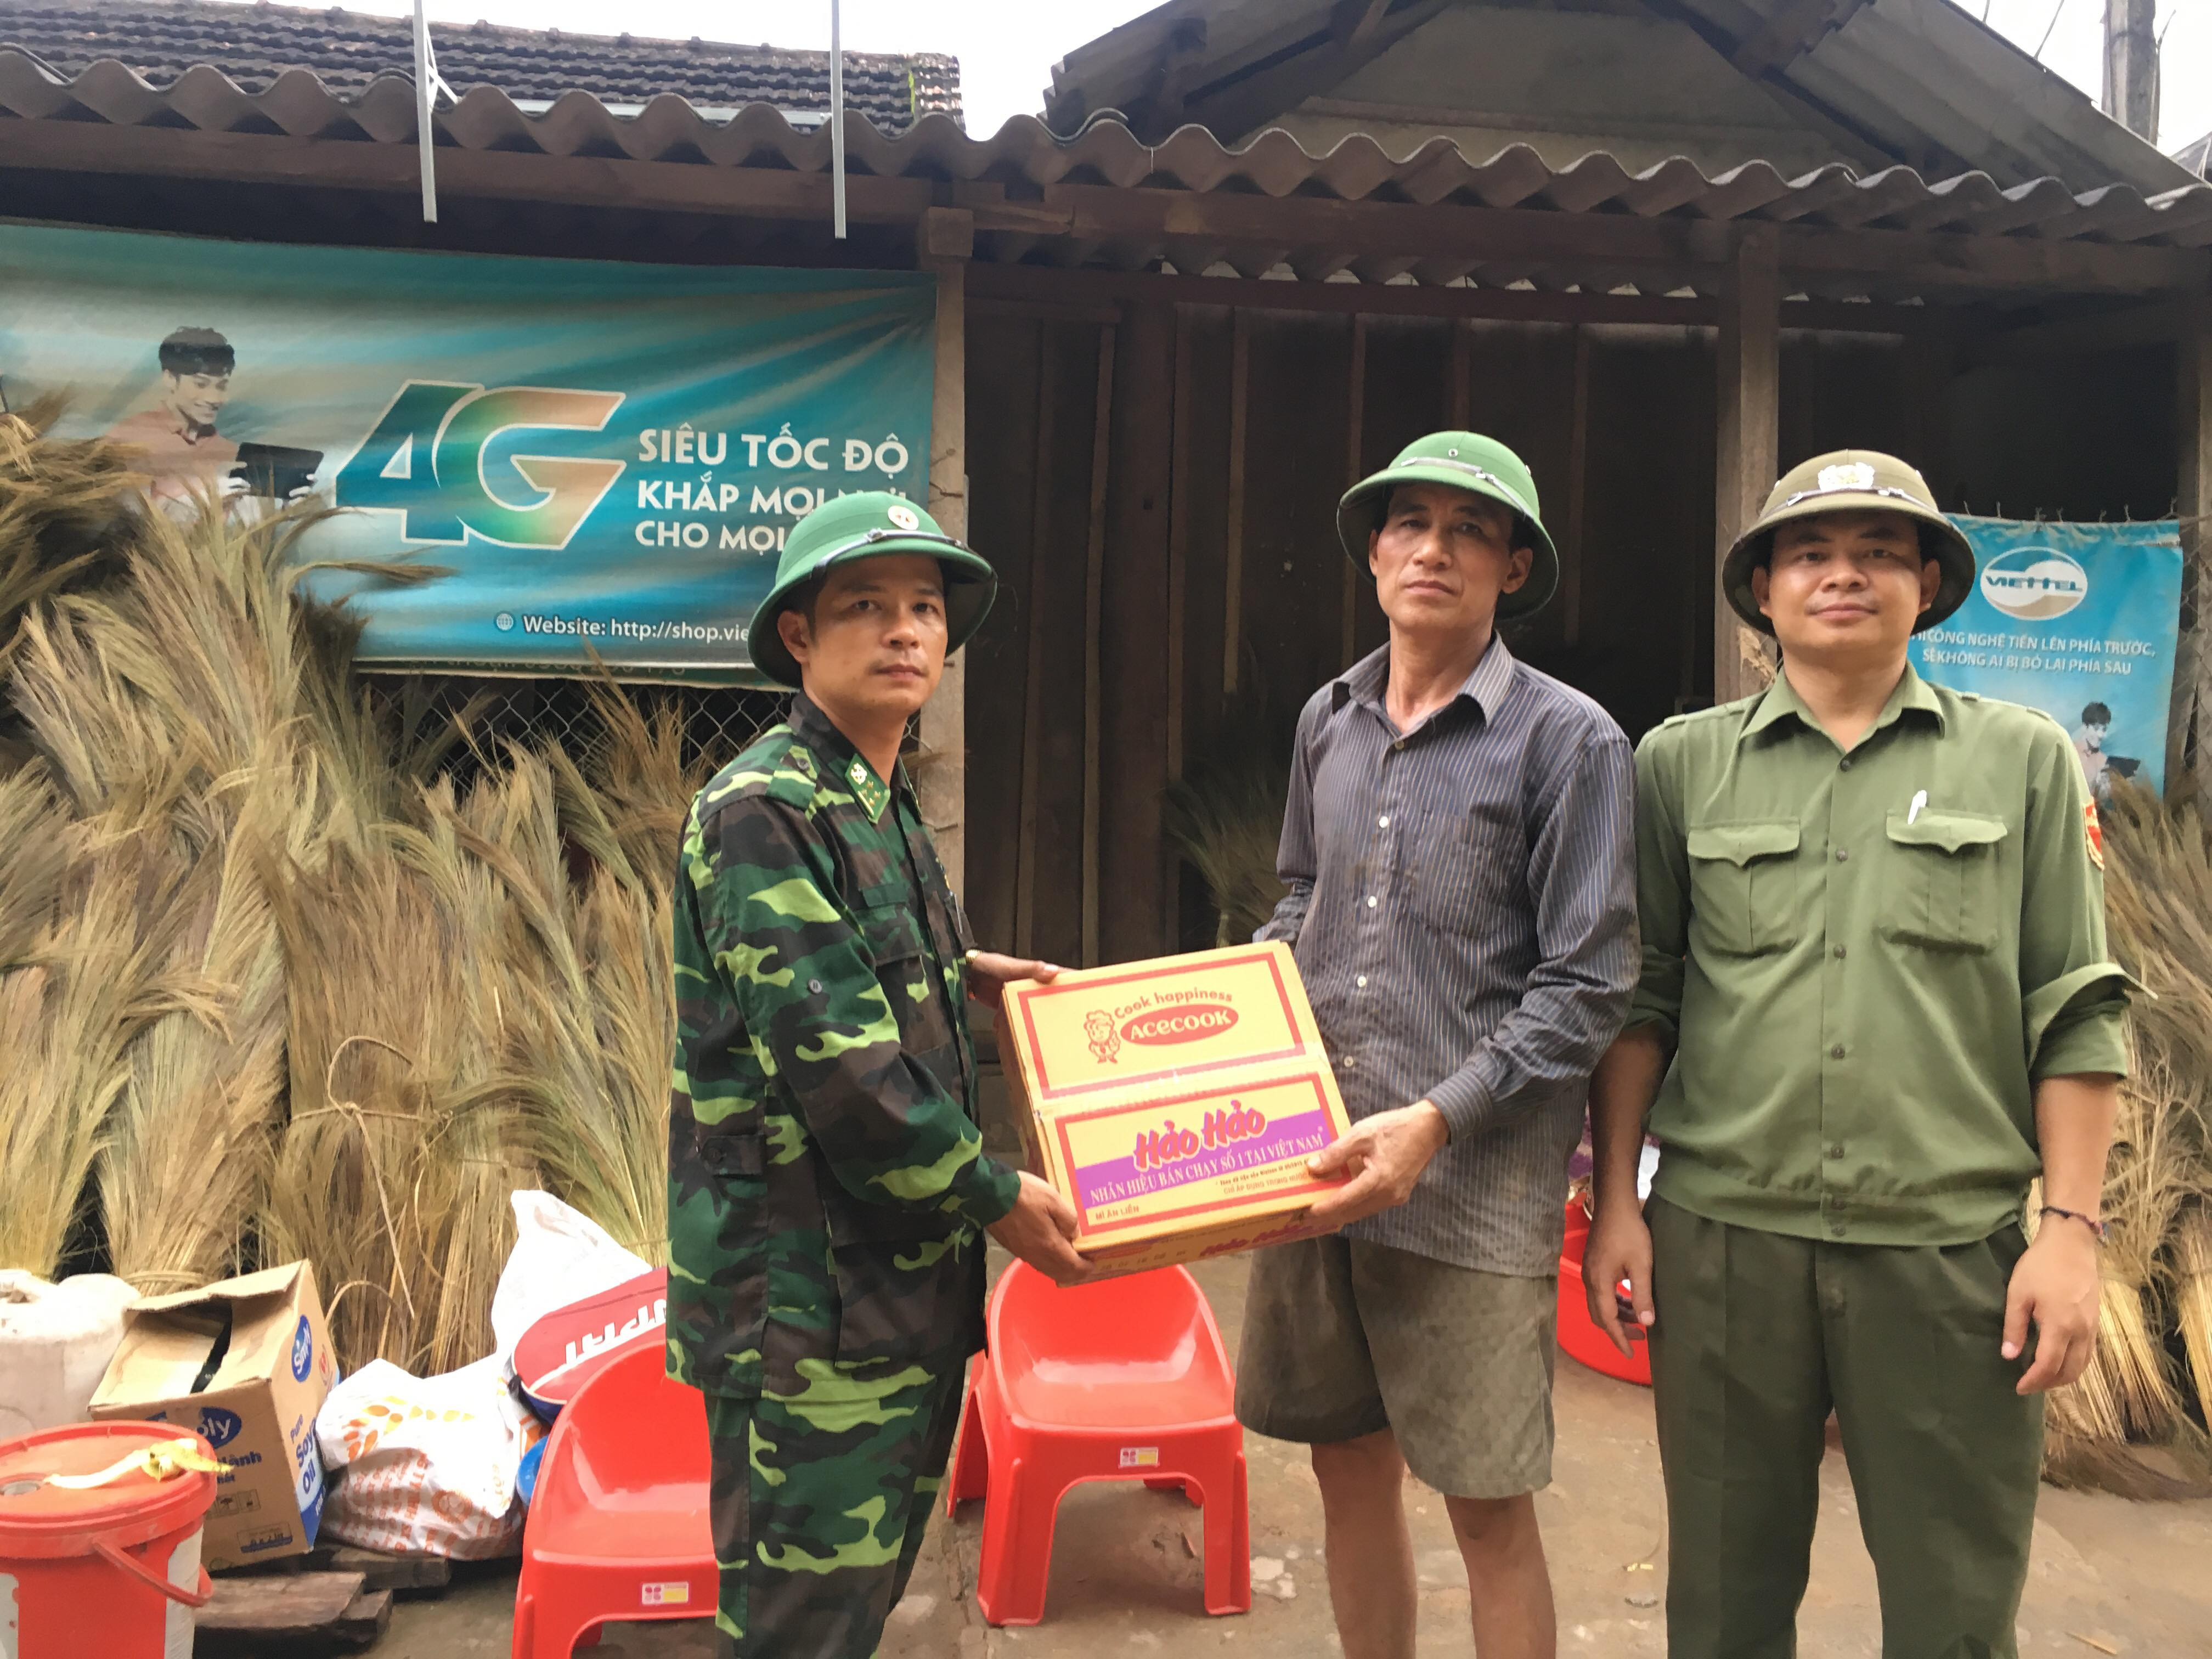 Đồn Biên phòng cửa khẩu quốc tế Nậm Cắn hỗ trợ mỳ tôm cho các hộ gia đình bị thiệt hại nặng. Ảnh: Hải Thượng